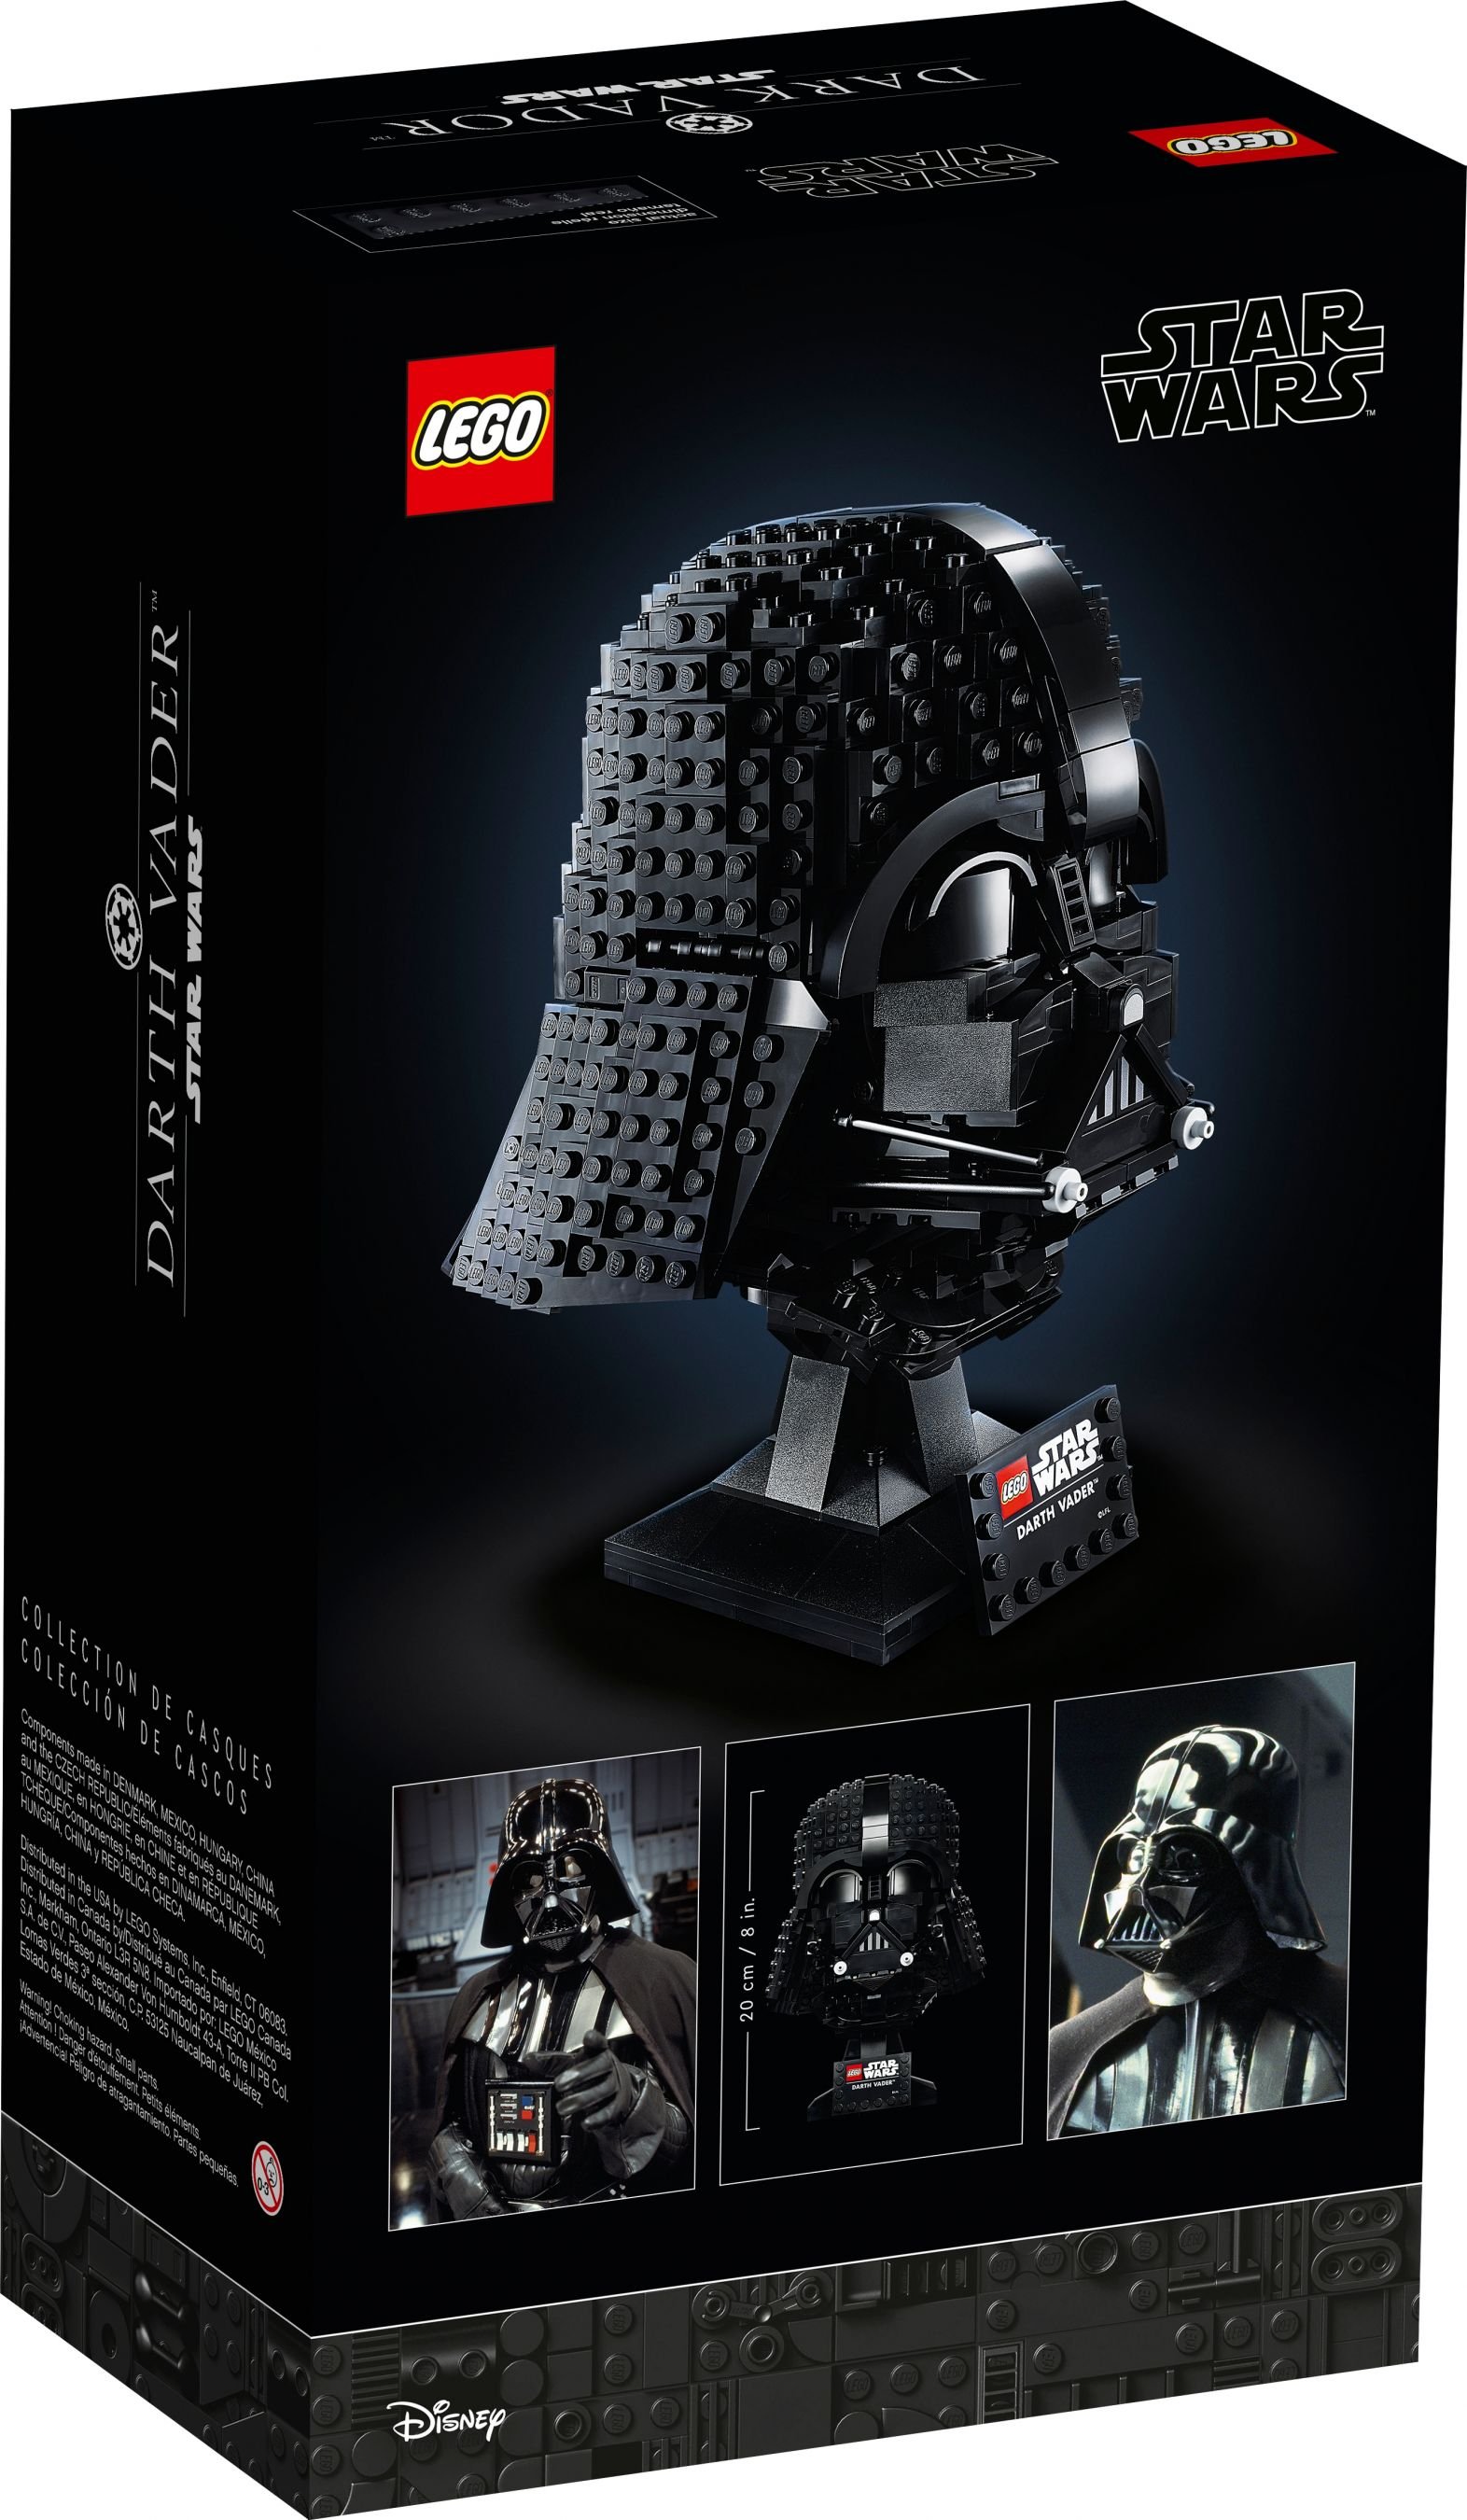 LEGO Star Wars 5008118 Dunkle Seite Paket LEGO_75304_alt6.jpg